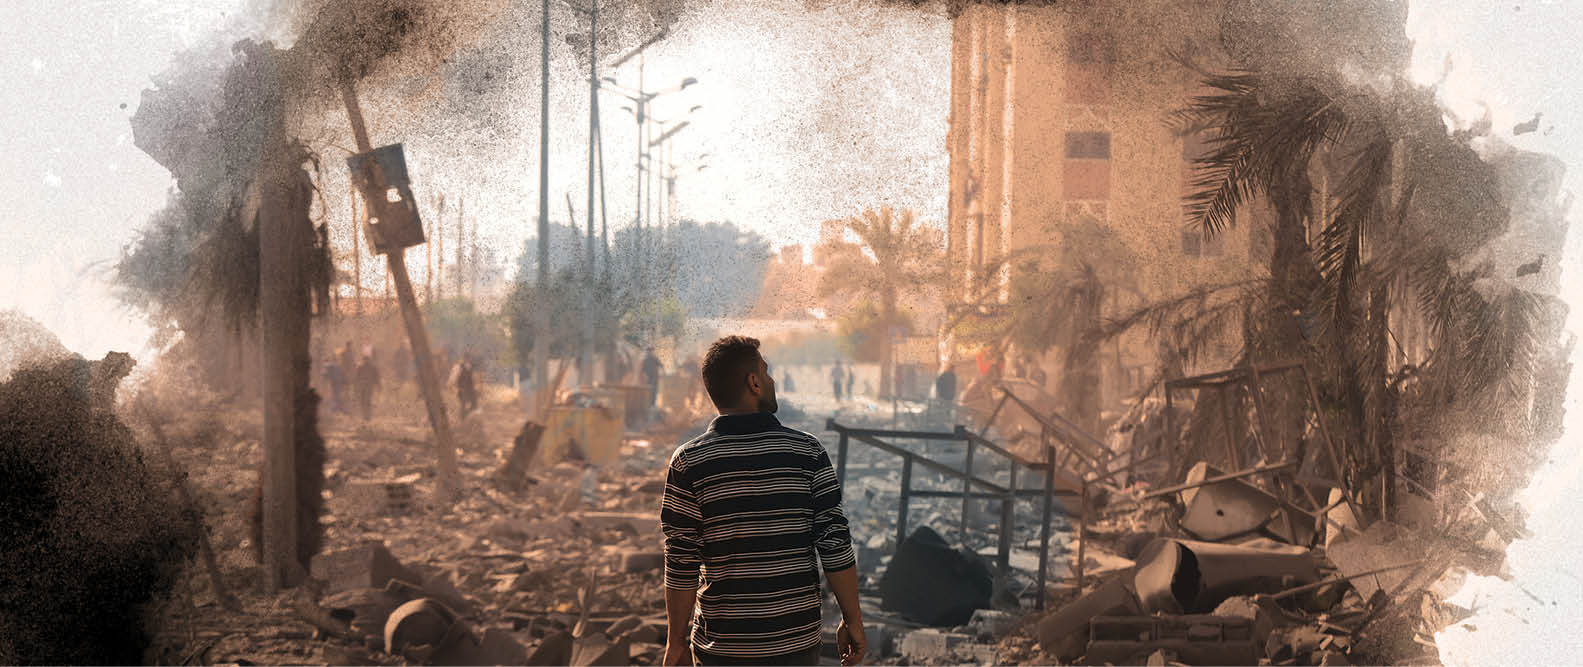 ذكرى النكبة الفلسطينية: إحلال مستمر منذ نكبة 1948 وحتى الإبادة الممنهجة على غزة.